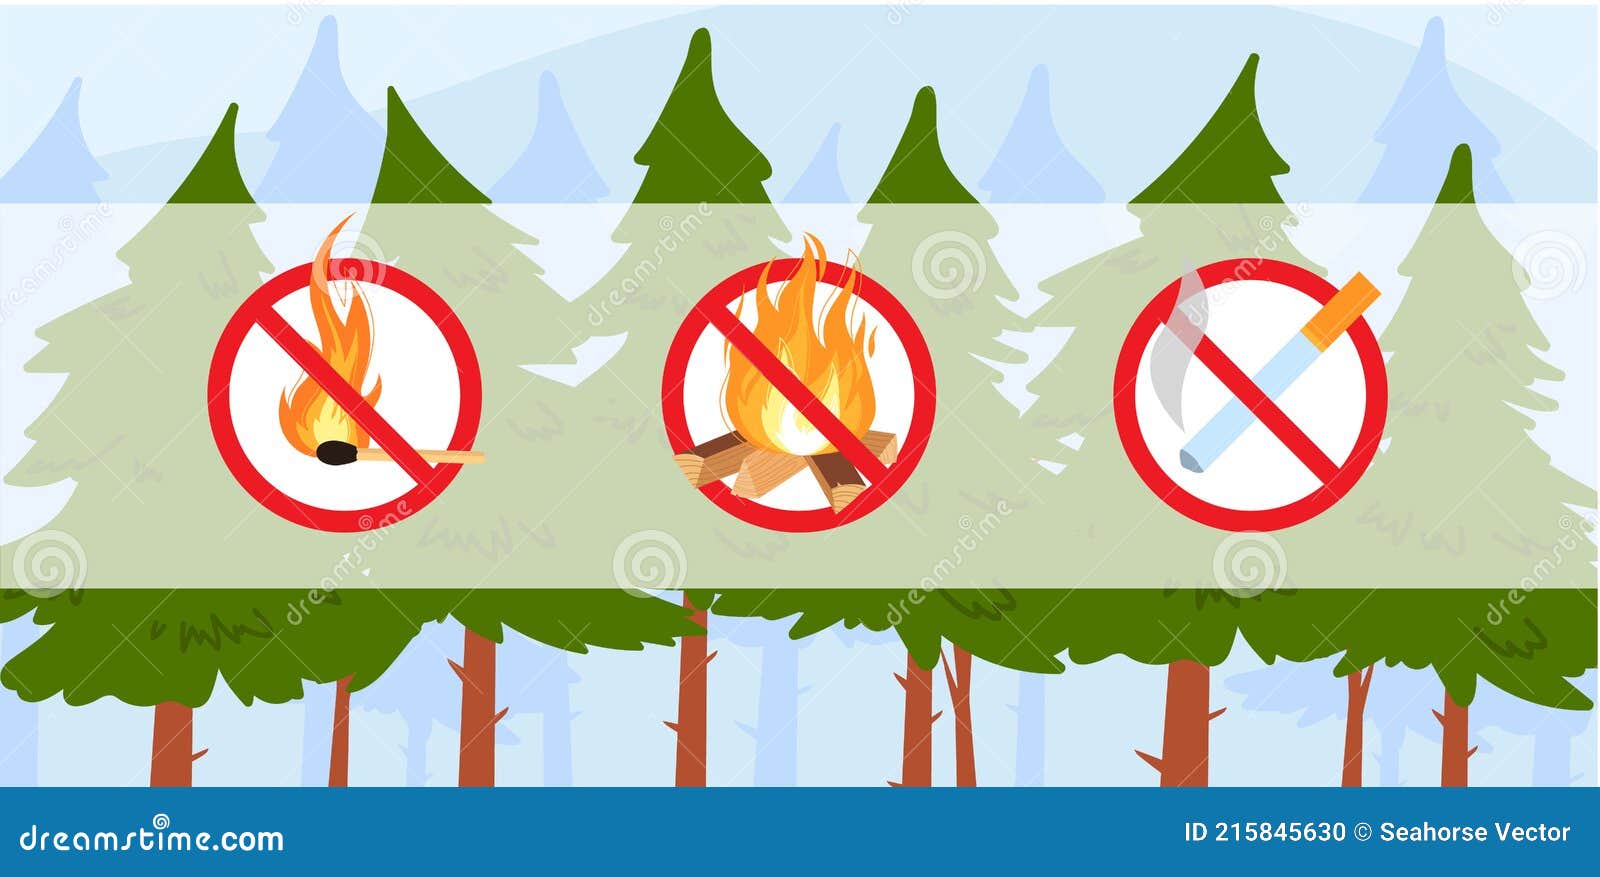 Detalle 34+ imagen prevencion de incendios forestales dibujos